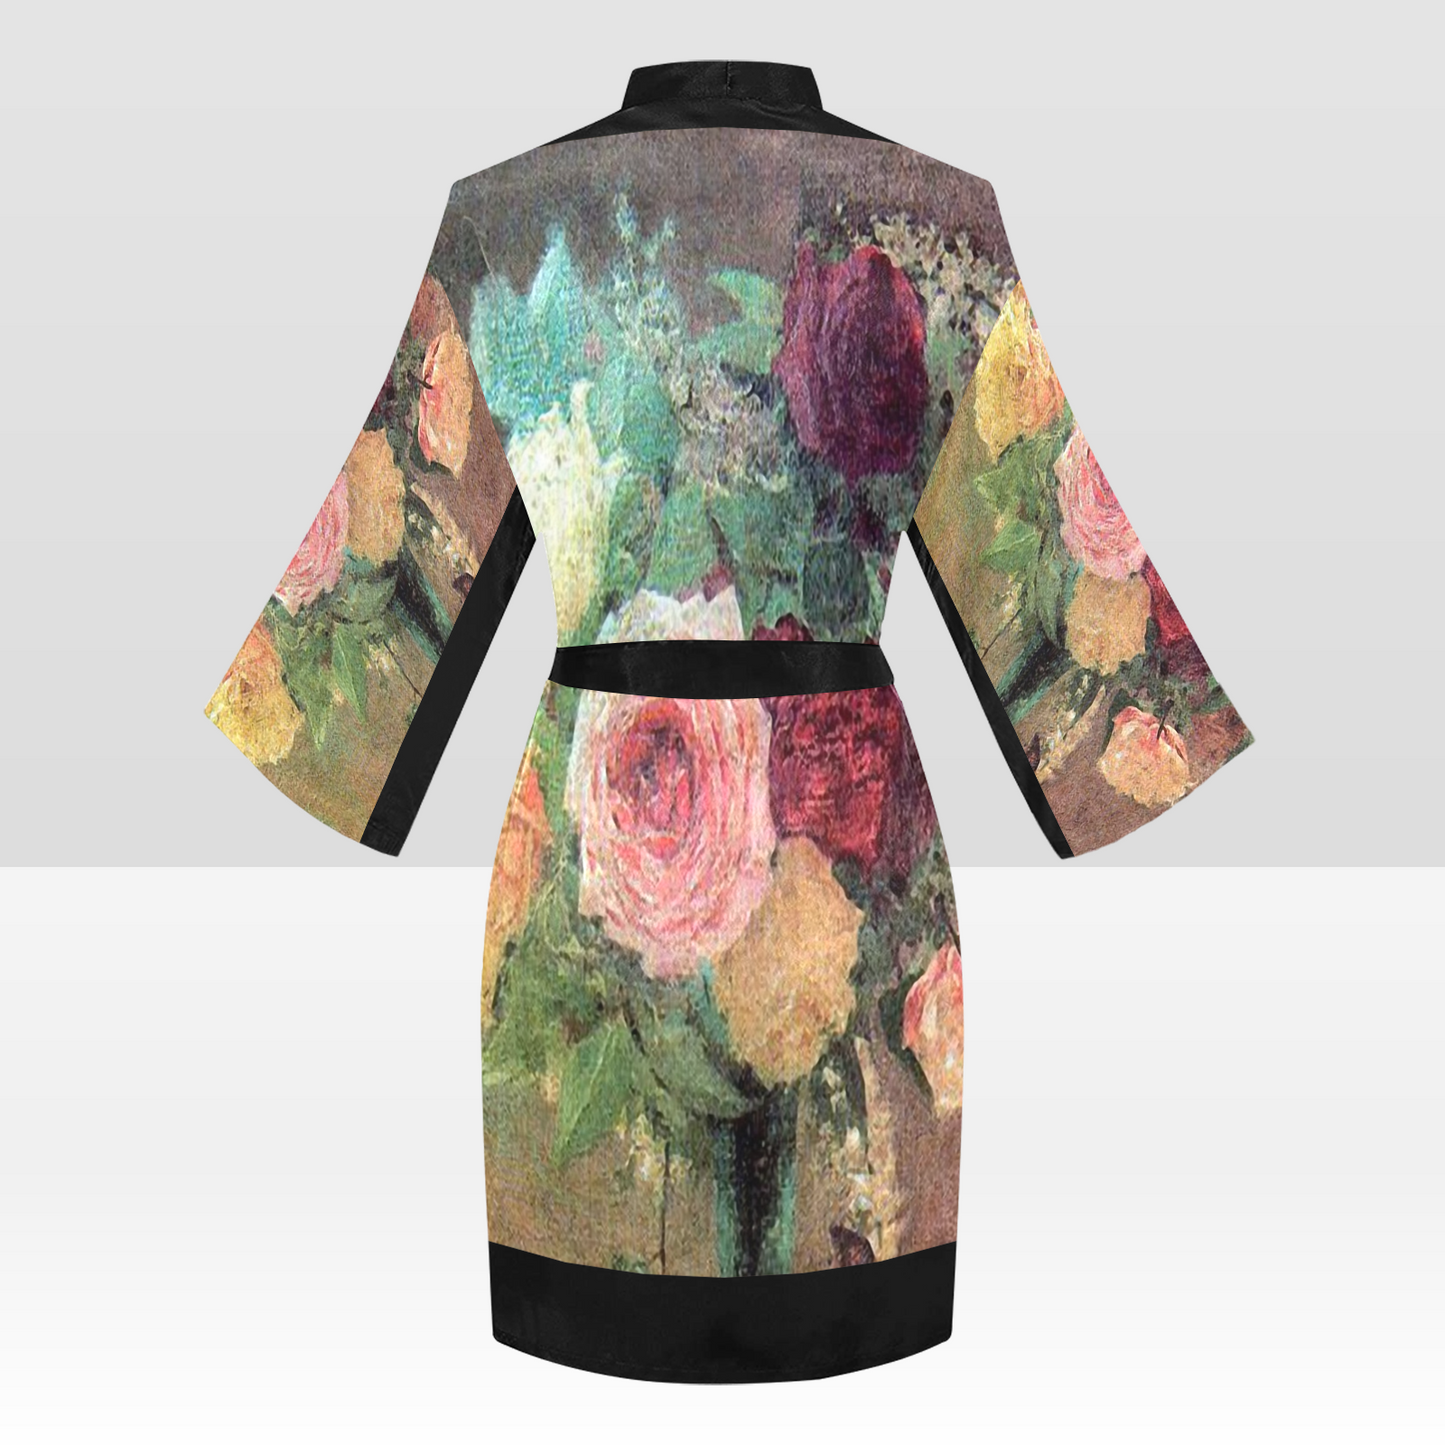 Vintage Floral Kimono Robe, Black or White Trim, Sizes XS to 2XL, Design 29